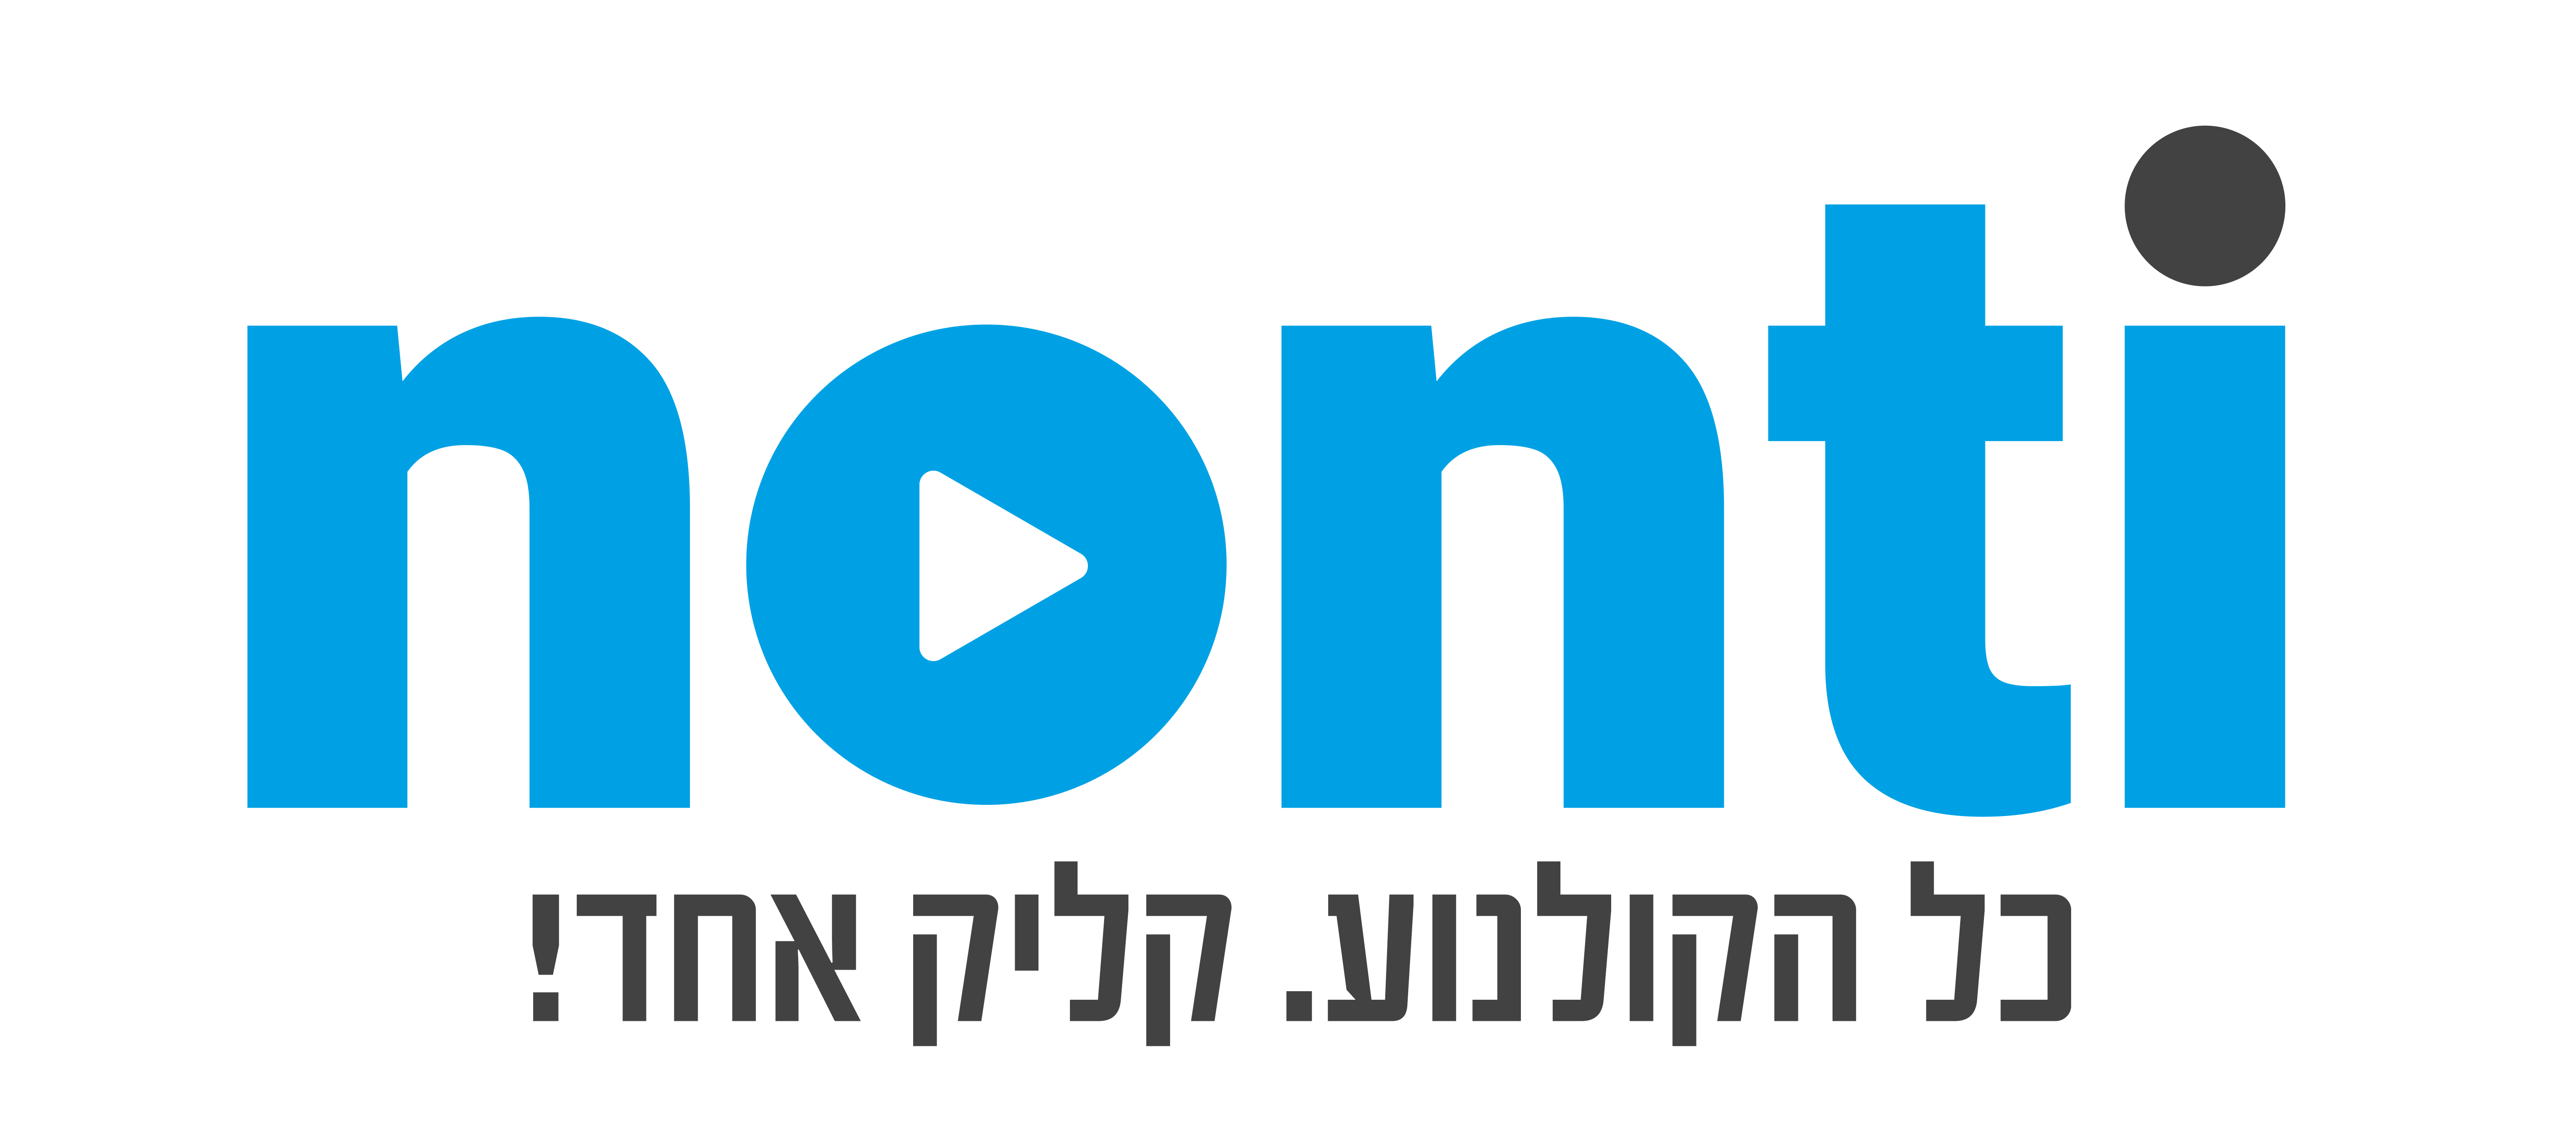 לוגו נונטי (1)